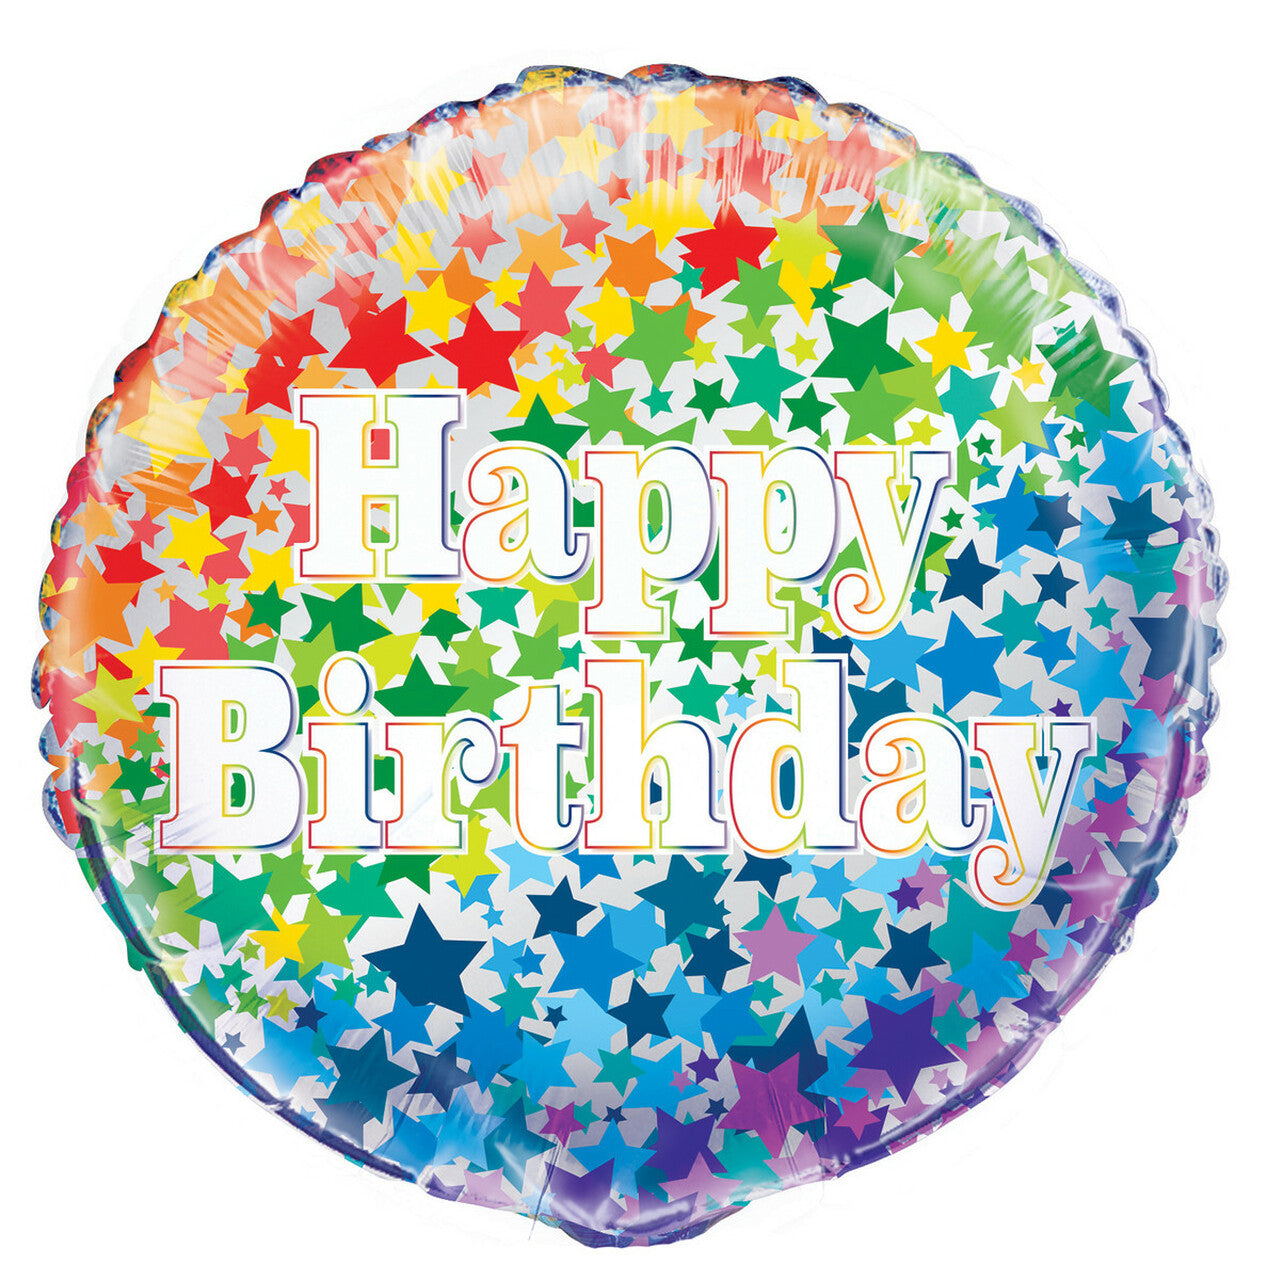 Helium Balloon - Happy Birthday 46Cm